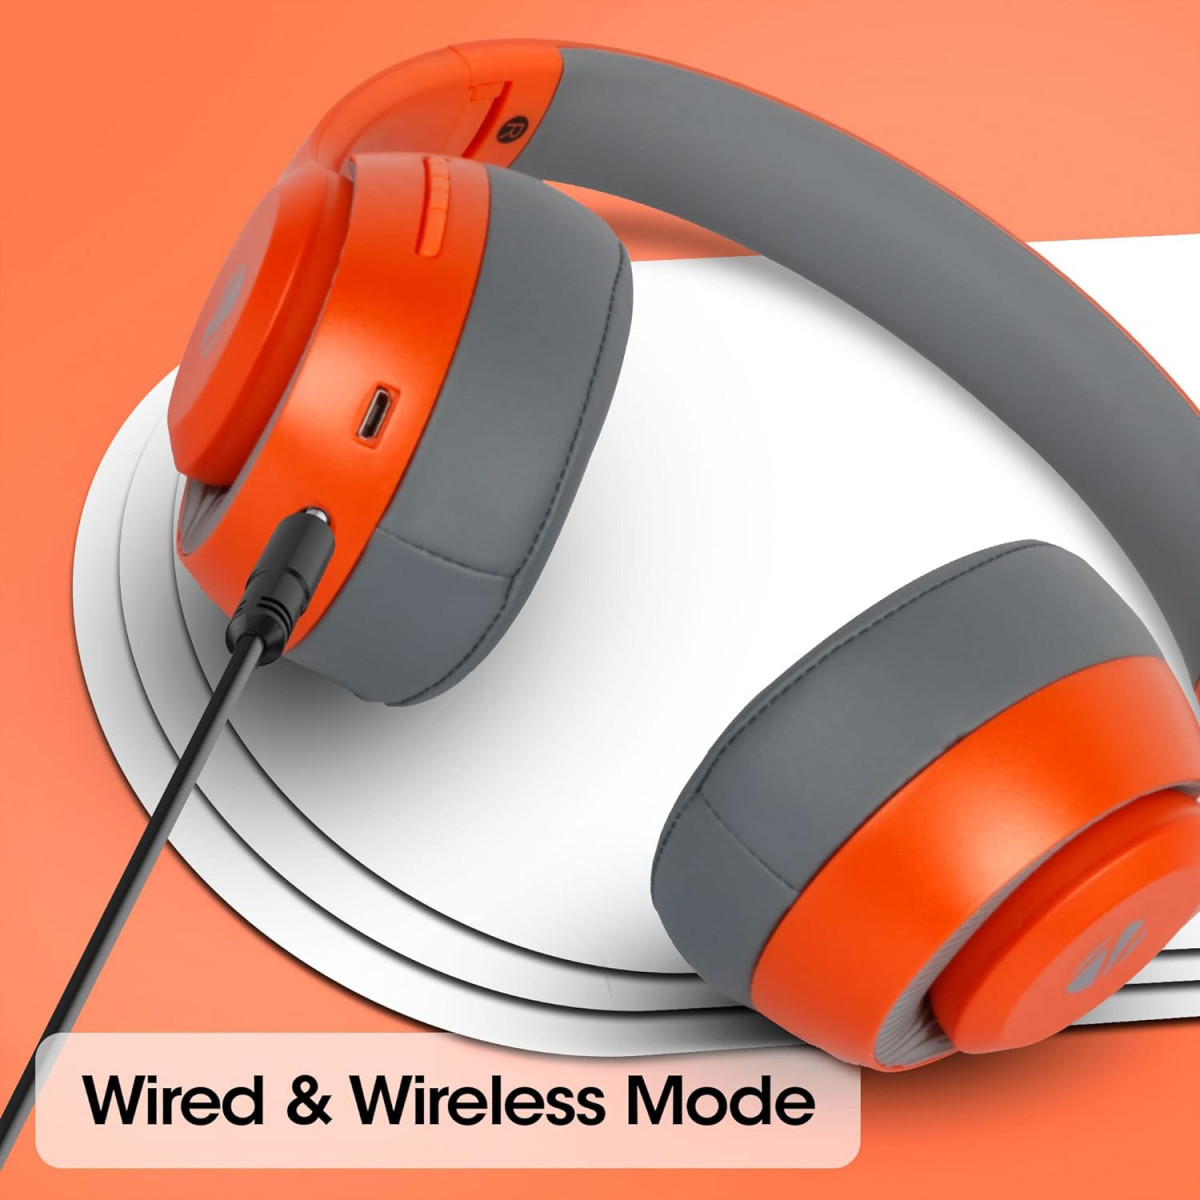 ZEBRONICS Dynamic Wireless Headphone with 34 Hours Playback Orange